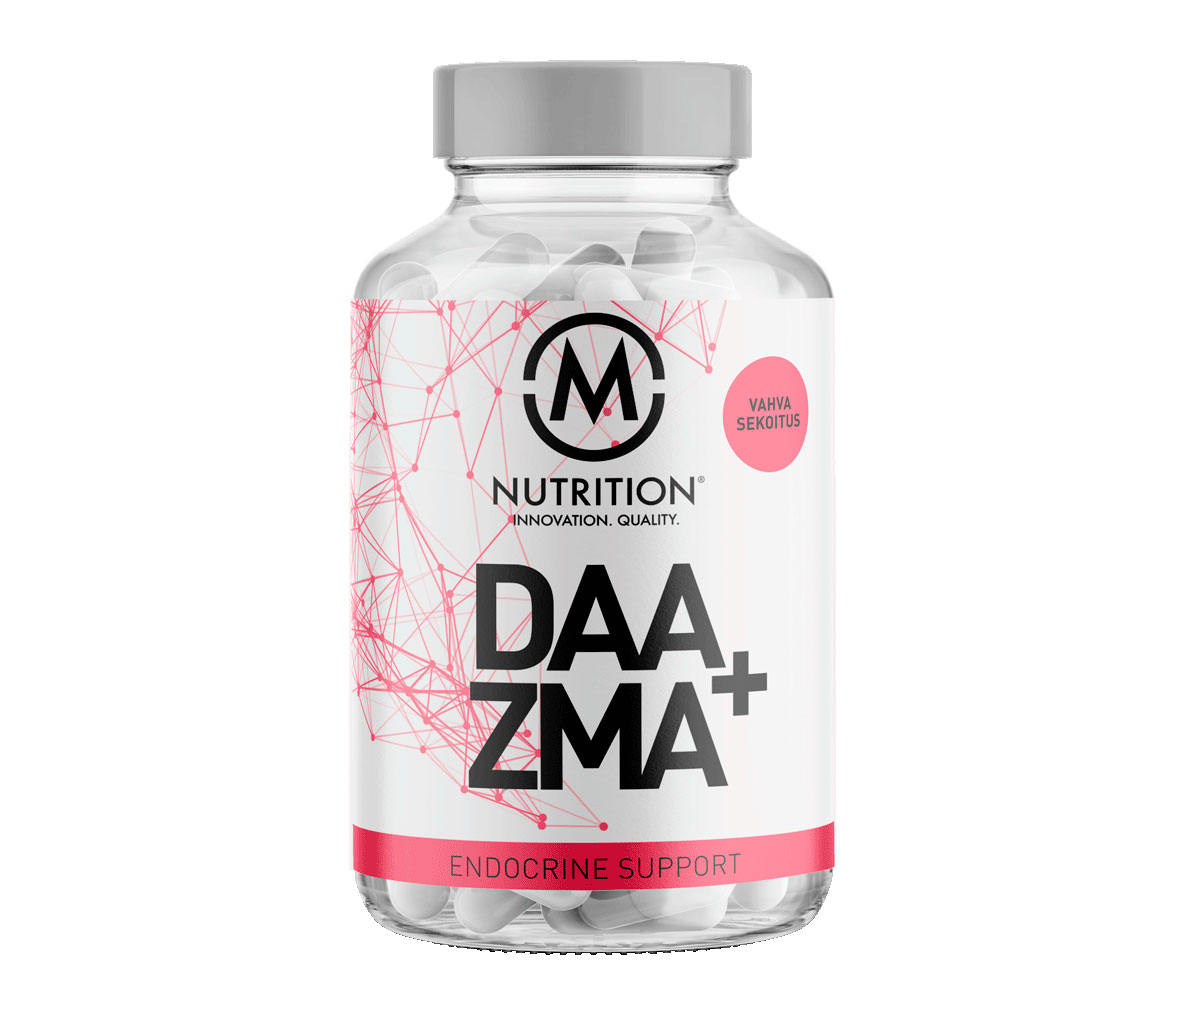 M-Nutrition DAA+ZMA - testosteronin tuotanto huippuunsa